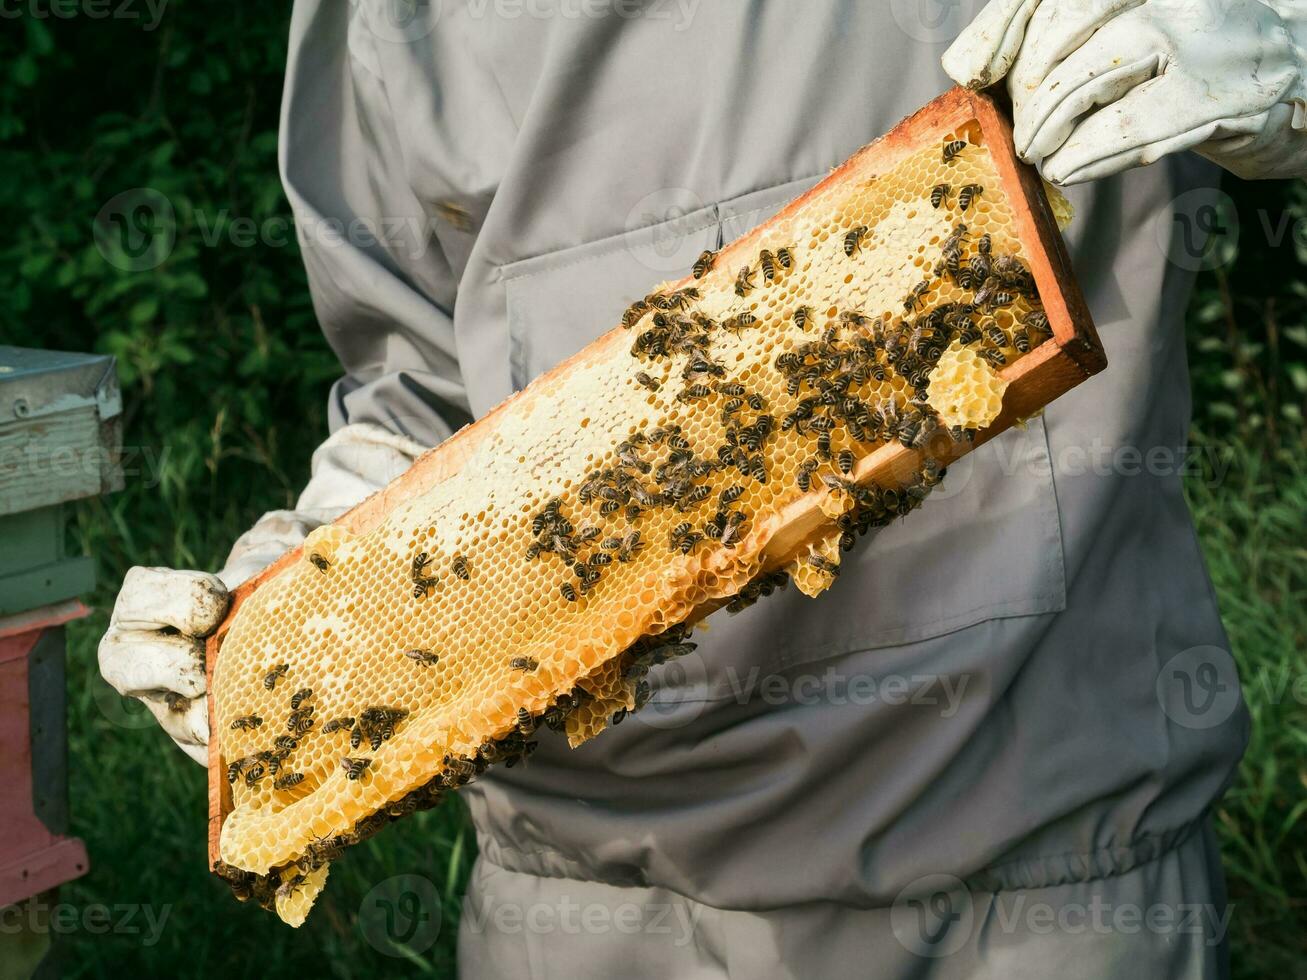 Imker entfernen Bienenwabe von Bienenstock. Person im Imker passen nehmen Honig von Bienenstock. Farmer tragen Biene passen Arbeiten mit Bienenwabe im Bienenhaus. Bienenzucht im Landschaft - - organisch Landwirtschaft foto